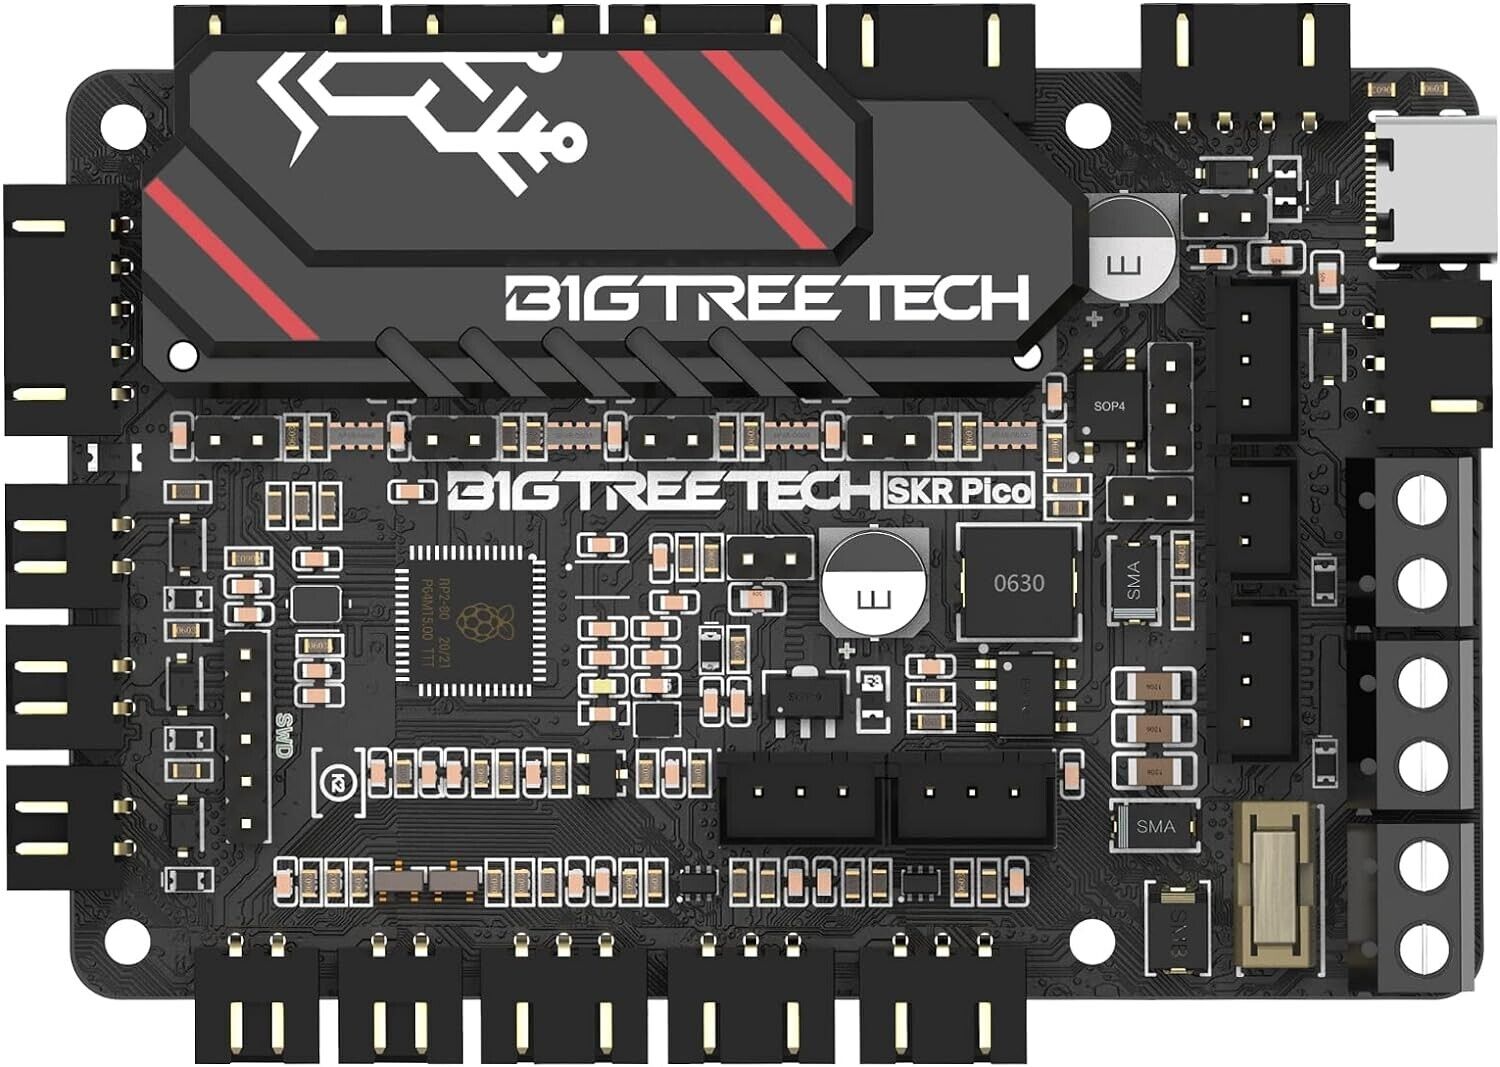 BIGTREETECH SKR Pico V1.0 Board TMC2209 Mini12864 LCD Raspberry PI For Voron V0